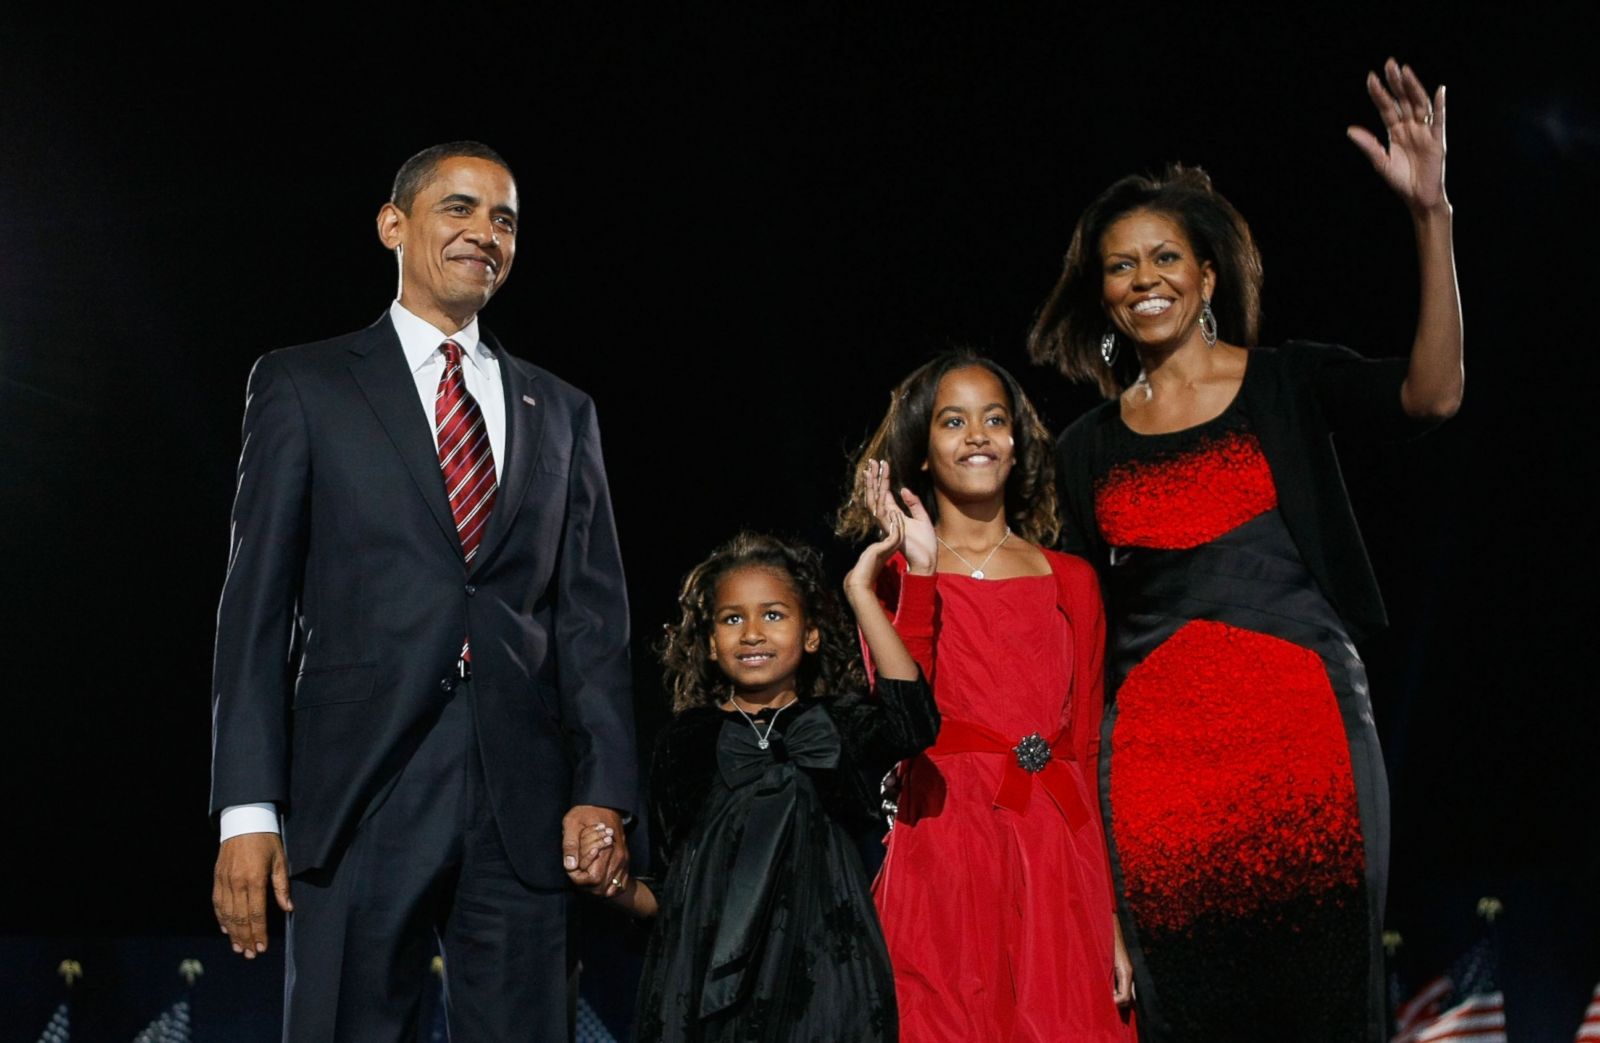 Con gái út nhà Obama sau 6 năm rời Nhà Trắng: Rũ bỏ hình tượng chỉn chu, gây sốc bởi phong cách phóng khoáng - Ảnh 1.